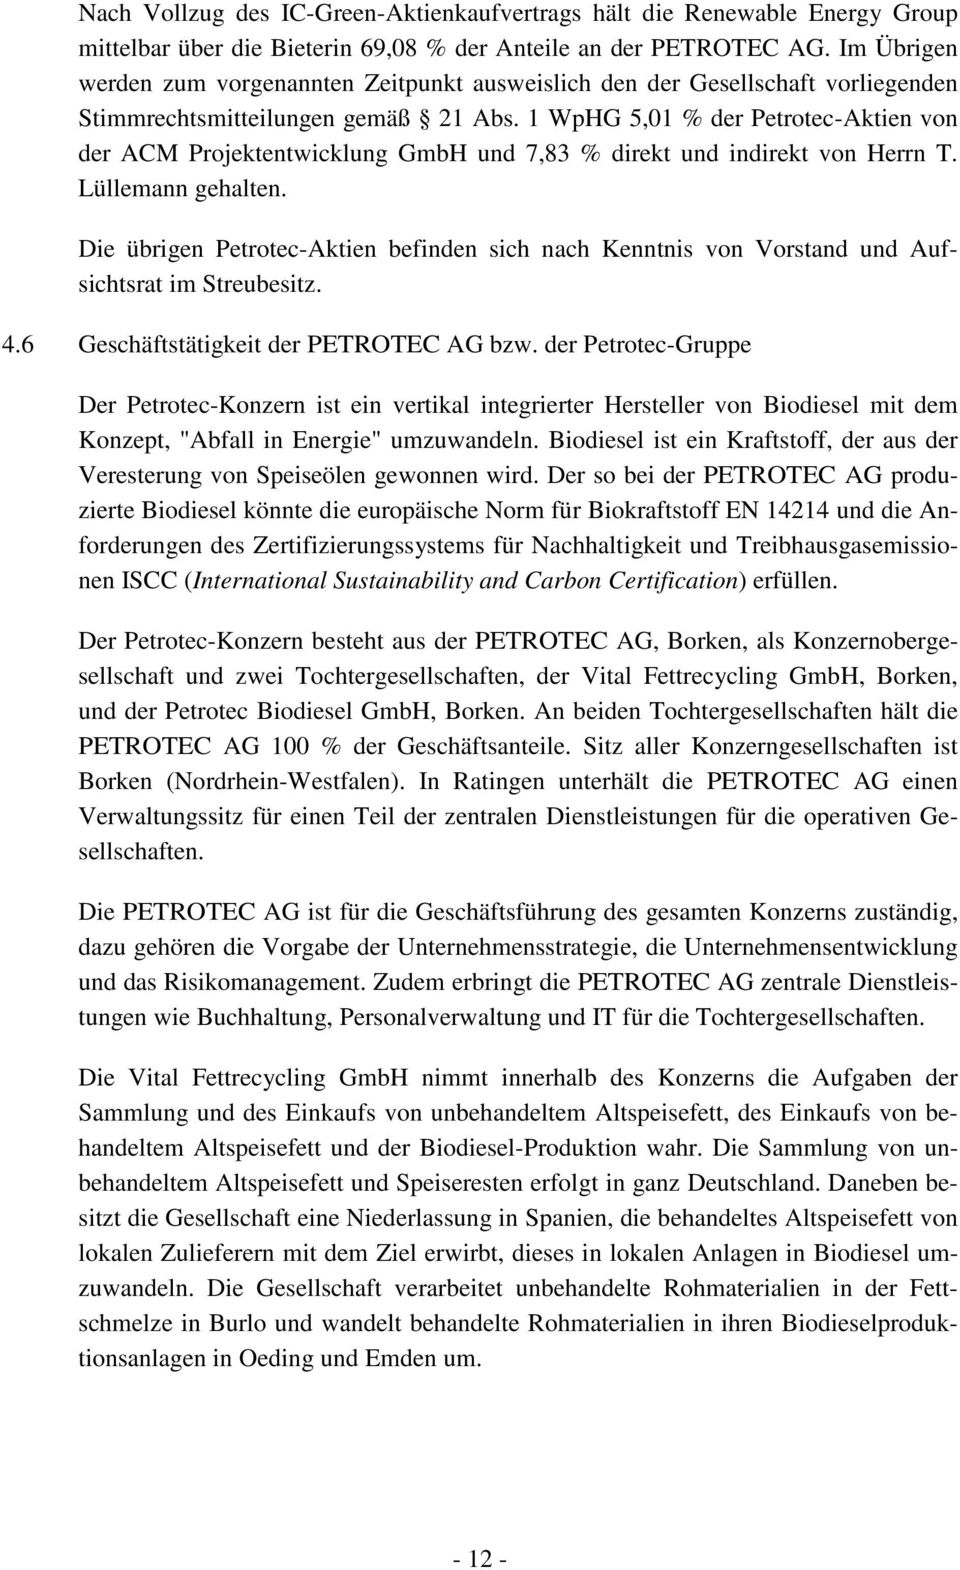 1 WpHG 5,01 % der Petrotec-Aktien von der ACM Projektentwicklung GmbH und 7,83 % direkt und indirekt von Herrn T. Lüllemann gehalten.